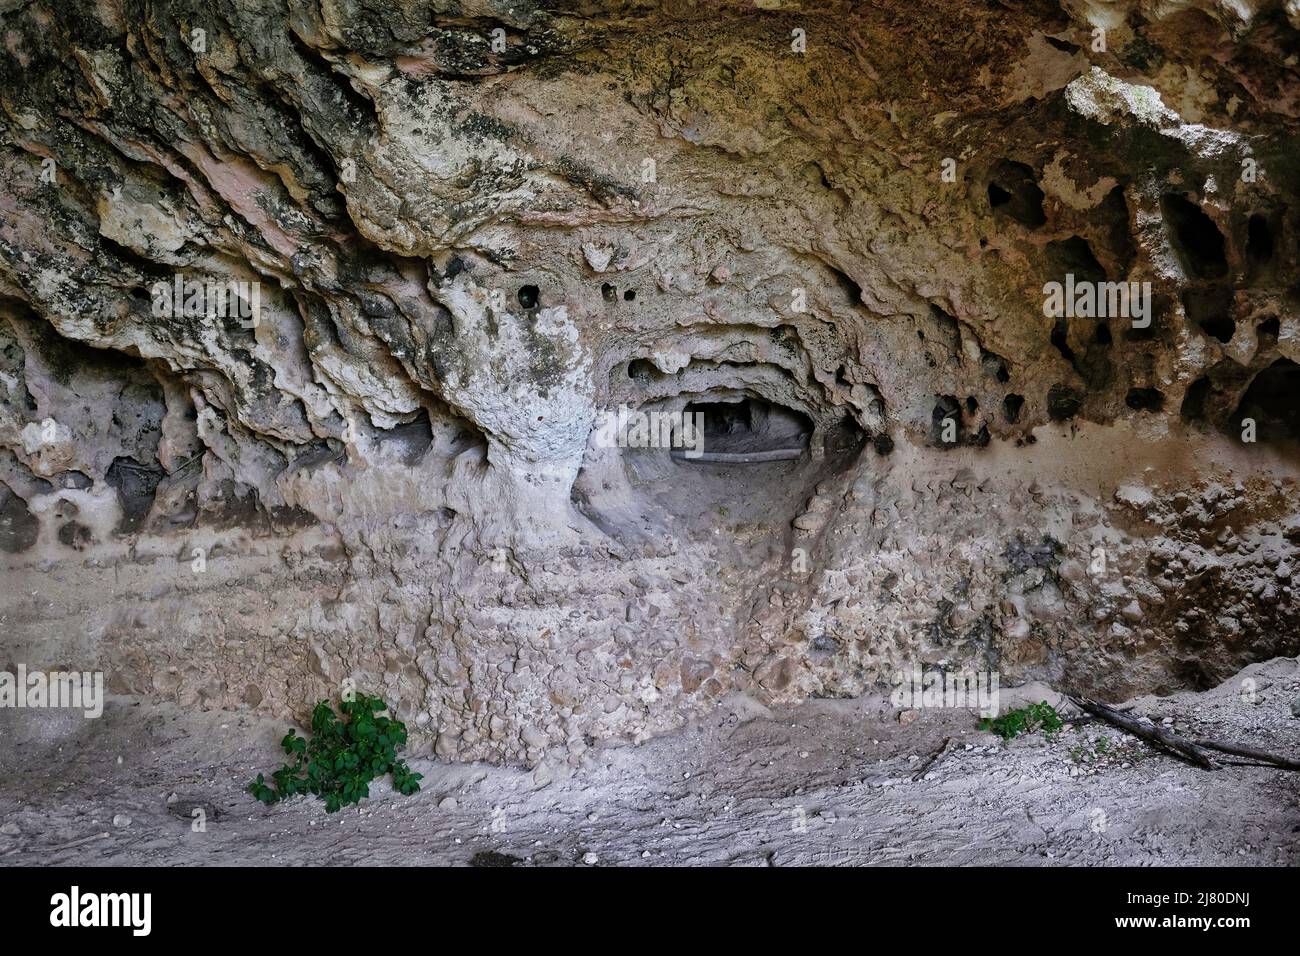 Grotte preistoriche nella Riserva della Murgia Materana (Matera) risalenti al Paleolitico e Neolitico Foto Stock